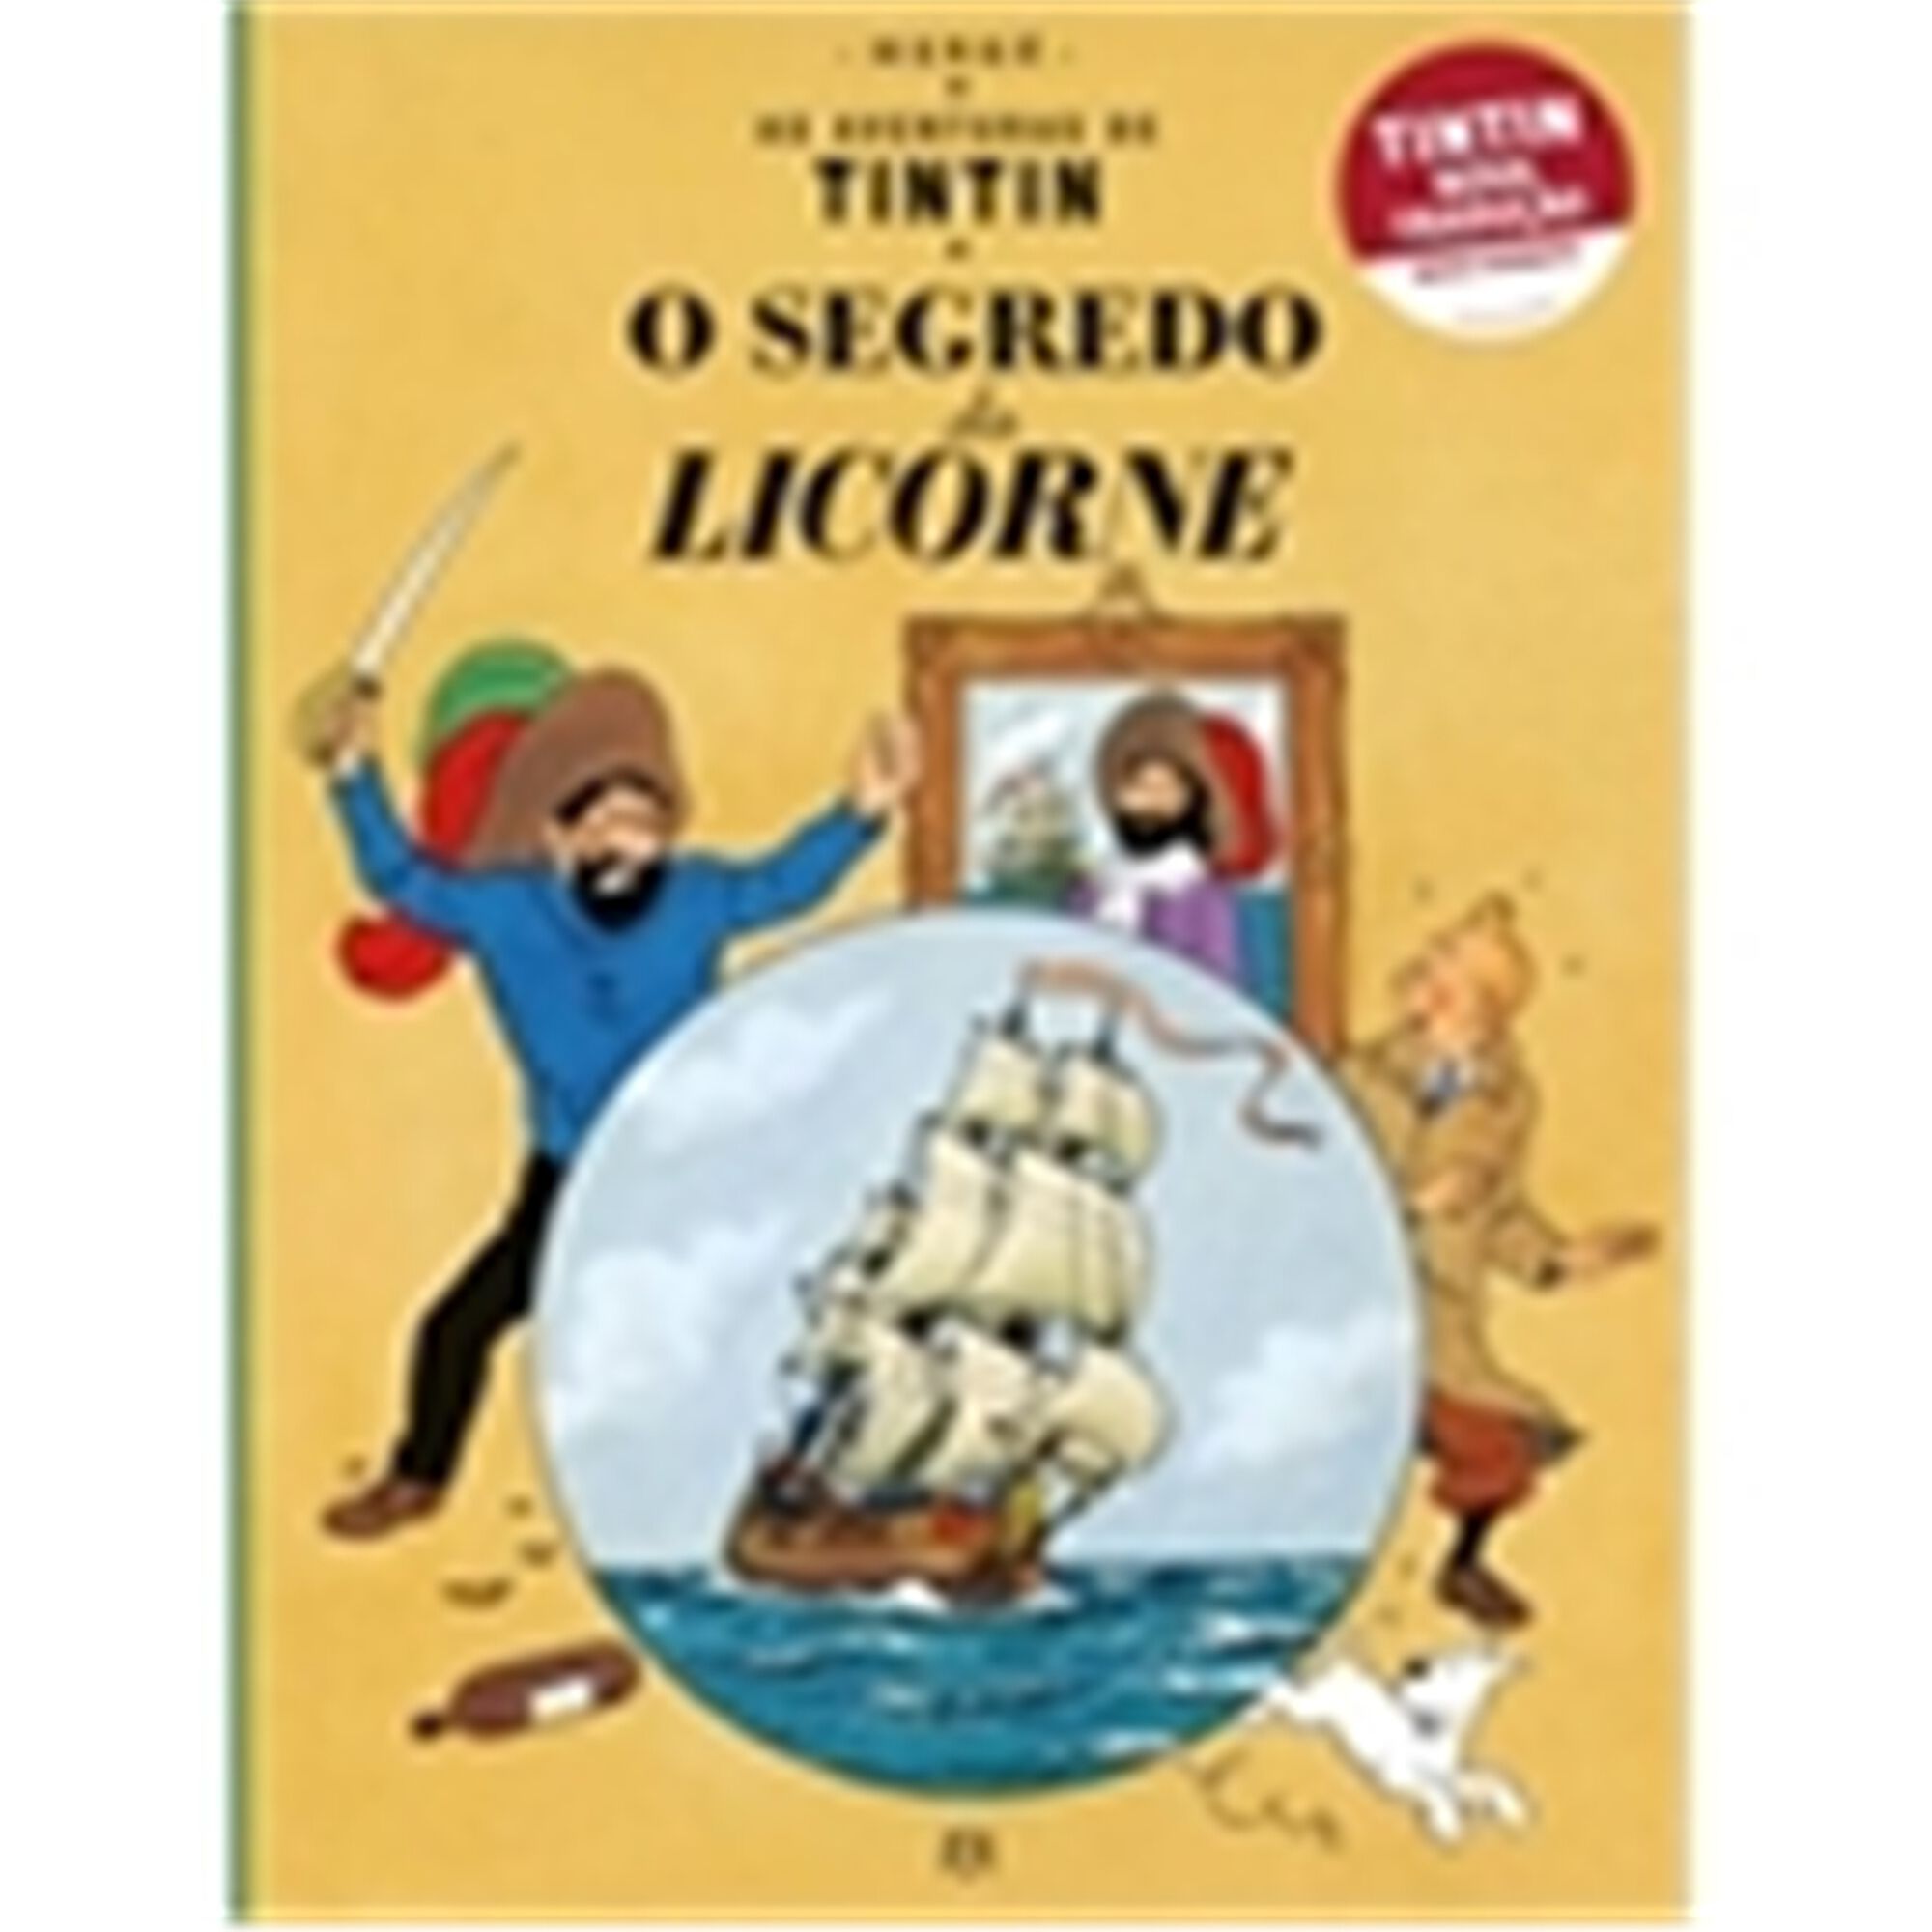 Tintin - O Segredo do Licorne